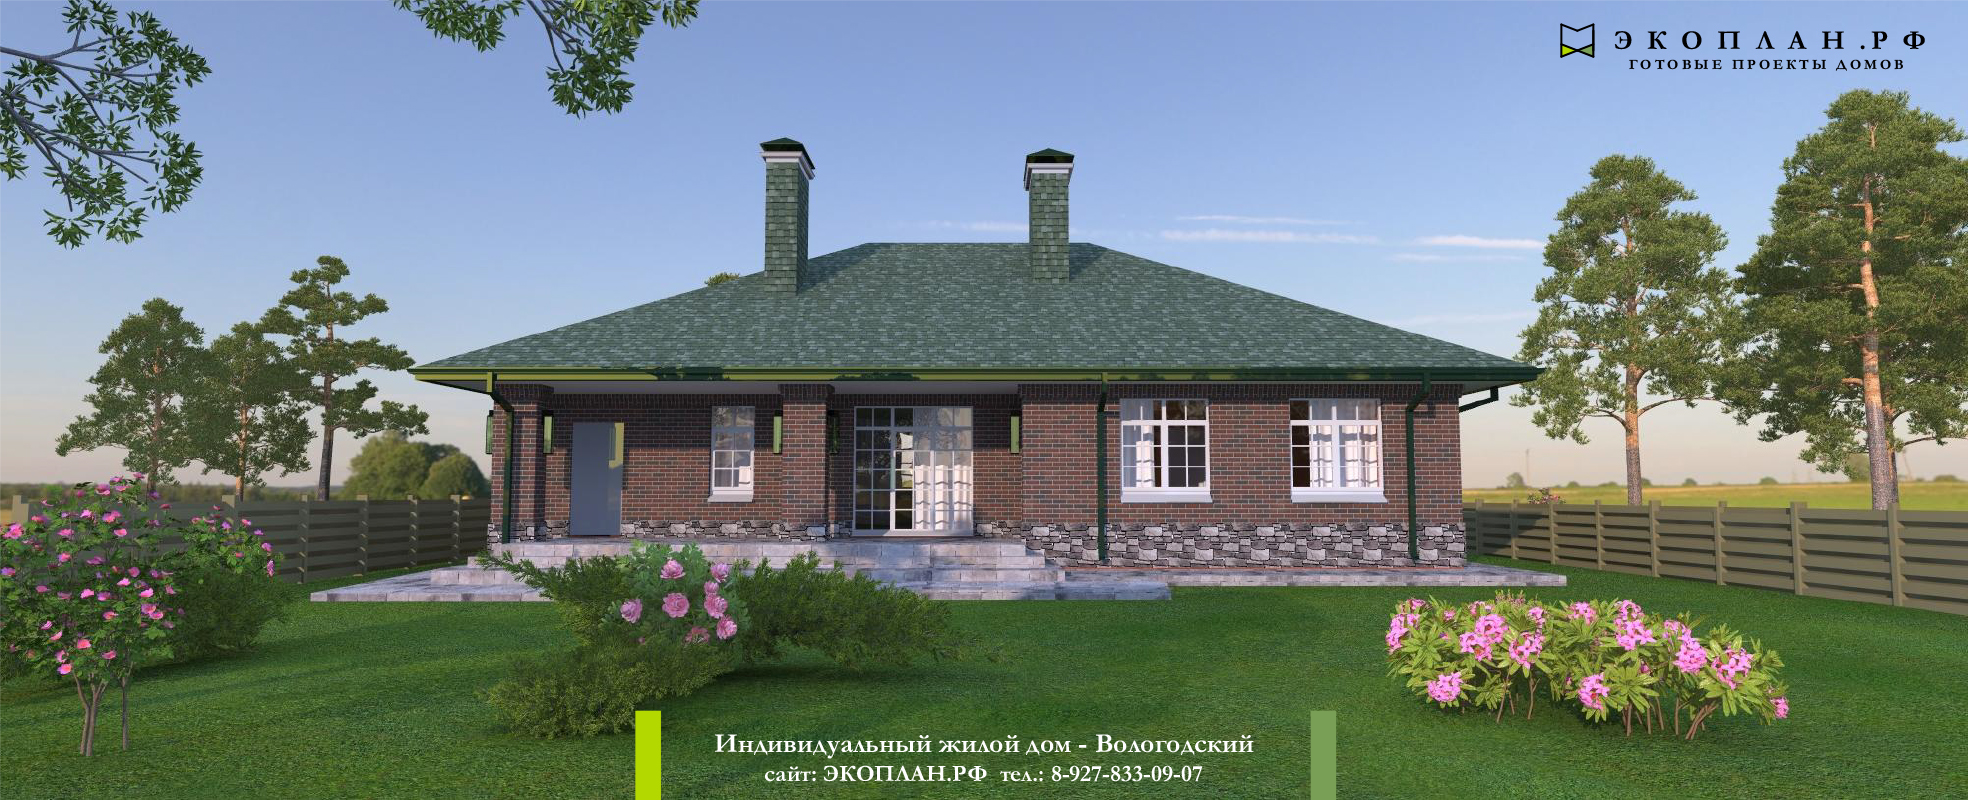 Вологодский - Готовый проект дома - Экоплан фасад